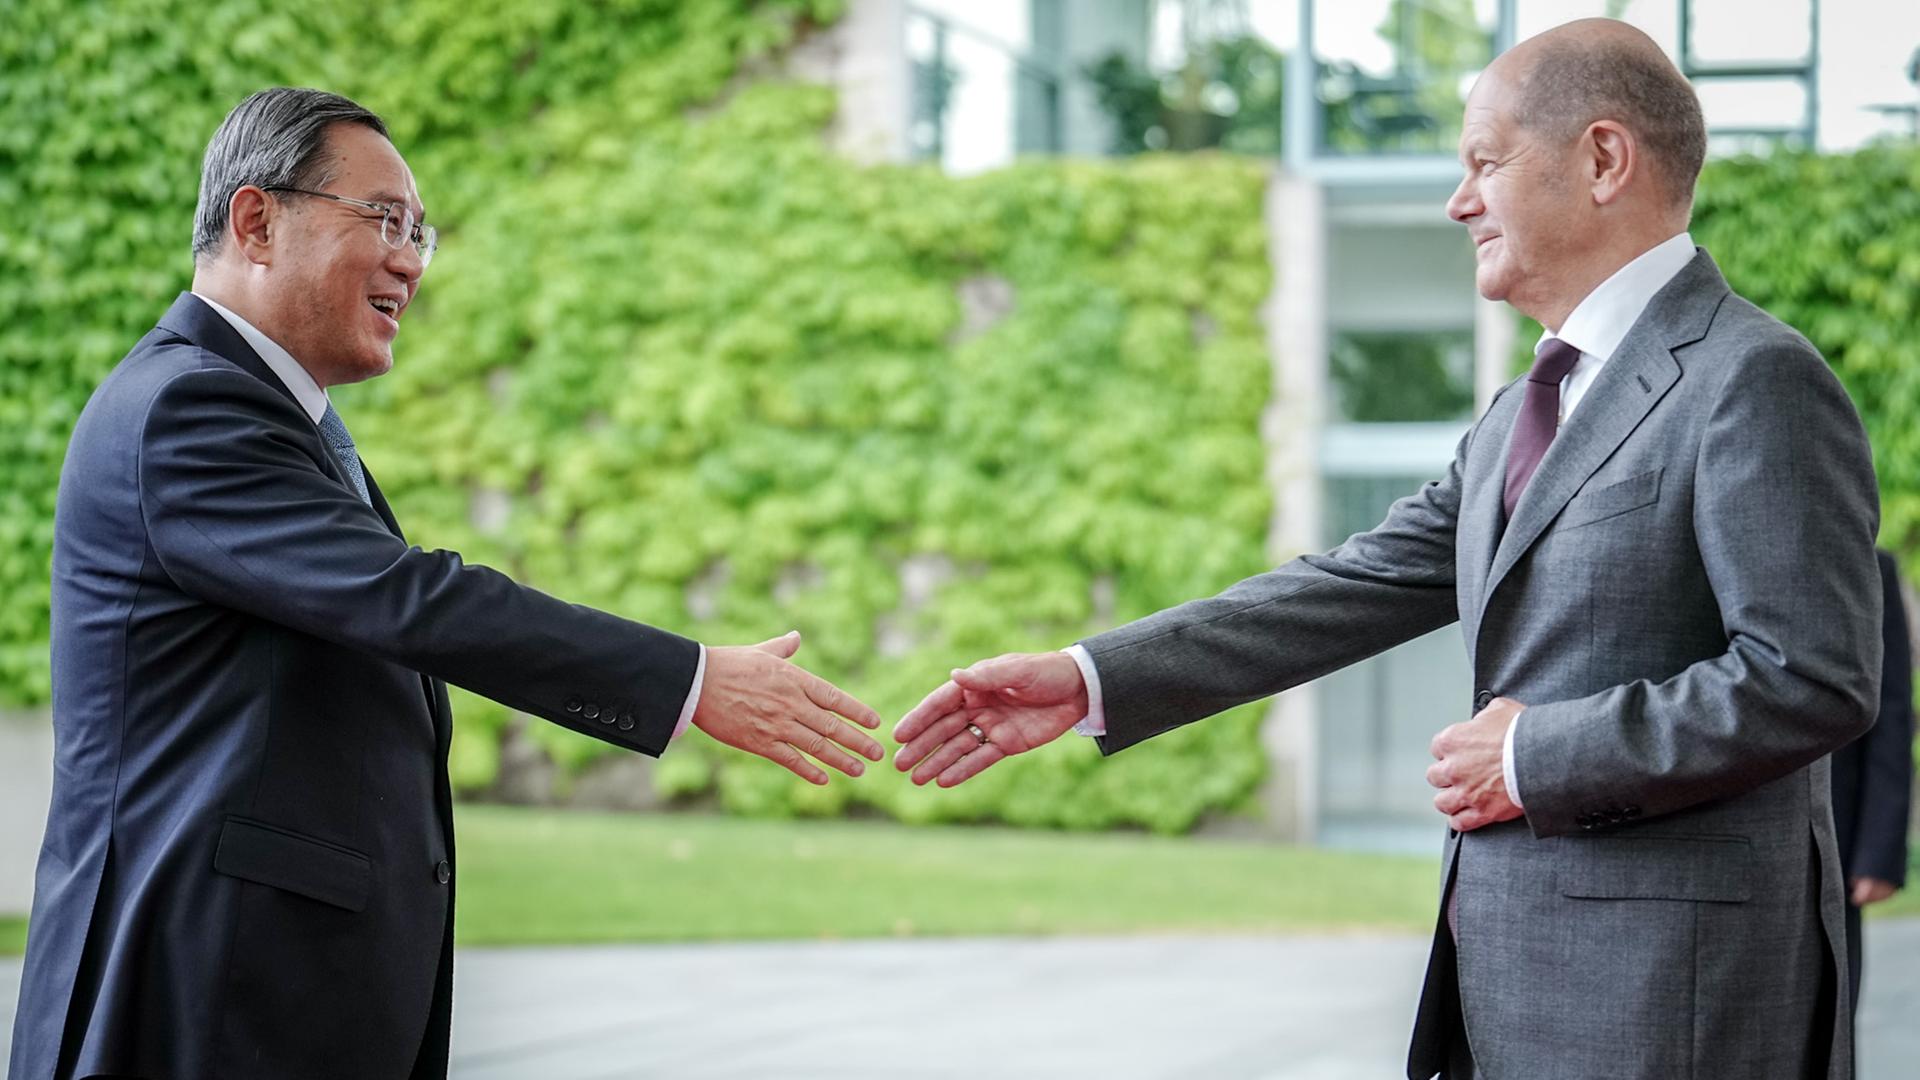 Bundeskanzler Scholz empfängt Chinas Ministerpräsident Li Qiang vor dem Bundeskanzleramt. Beide strecken die Hand aus, um sich die Hände zu schütteln und lächeln einander an.